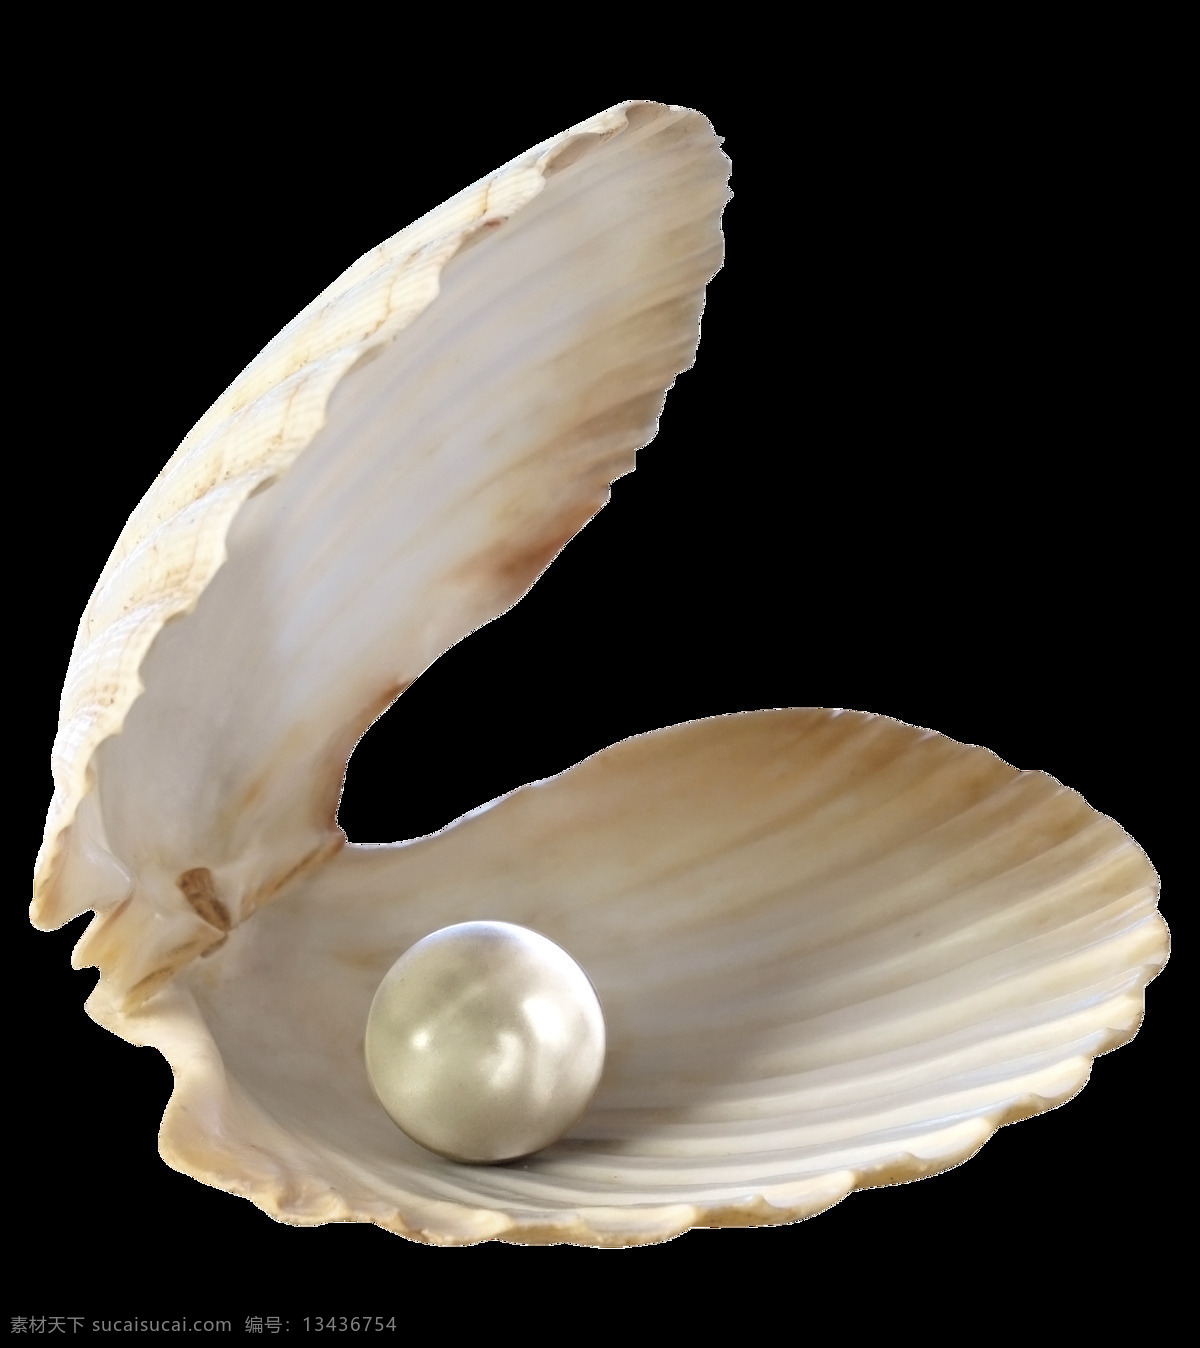 漂亮 珍珠 贝壳 免 抠 透明 图 层 海螺简笔画 海螺摄影 贝壳素材 贝壳海星 失量图贝壳 动物的海洋 海洋动物图片 海边贝壳 沙滩海螺 贝壳海螺